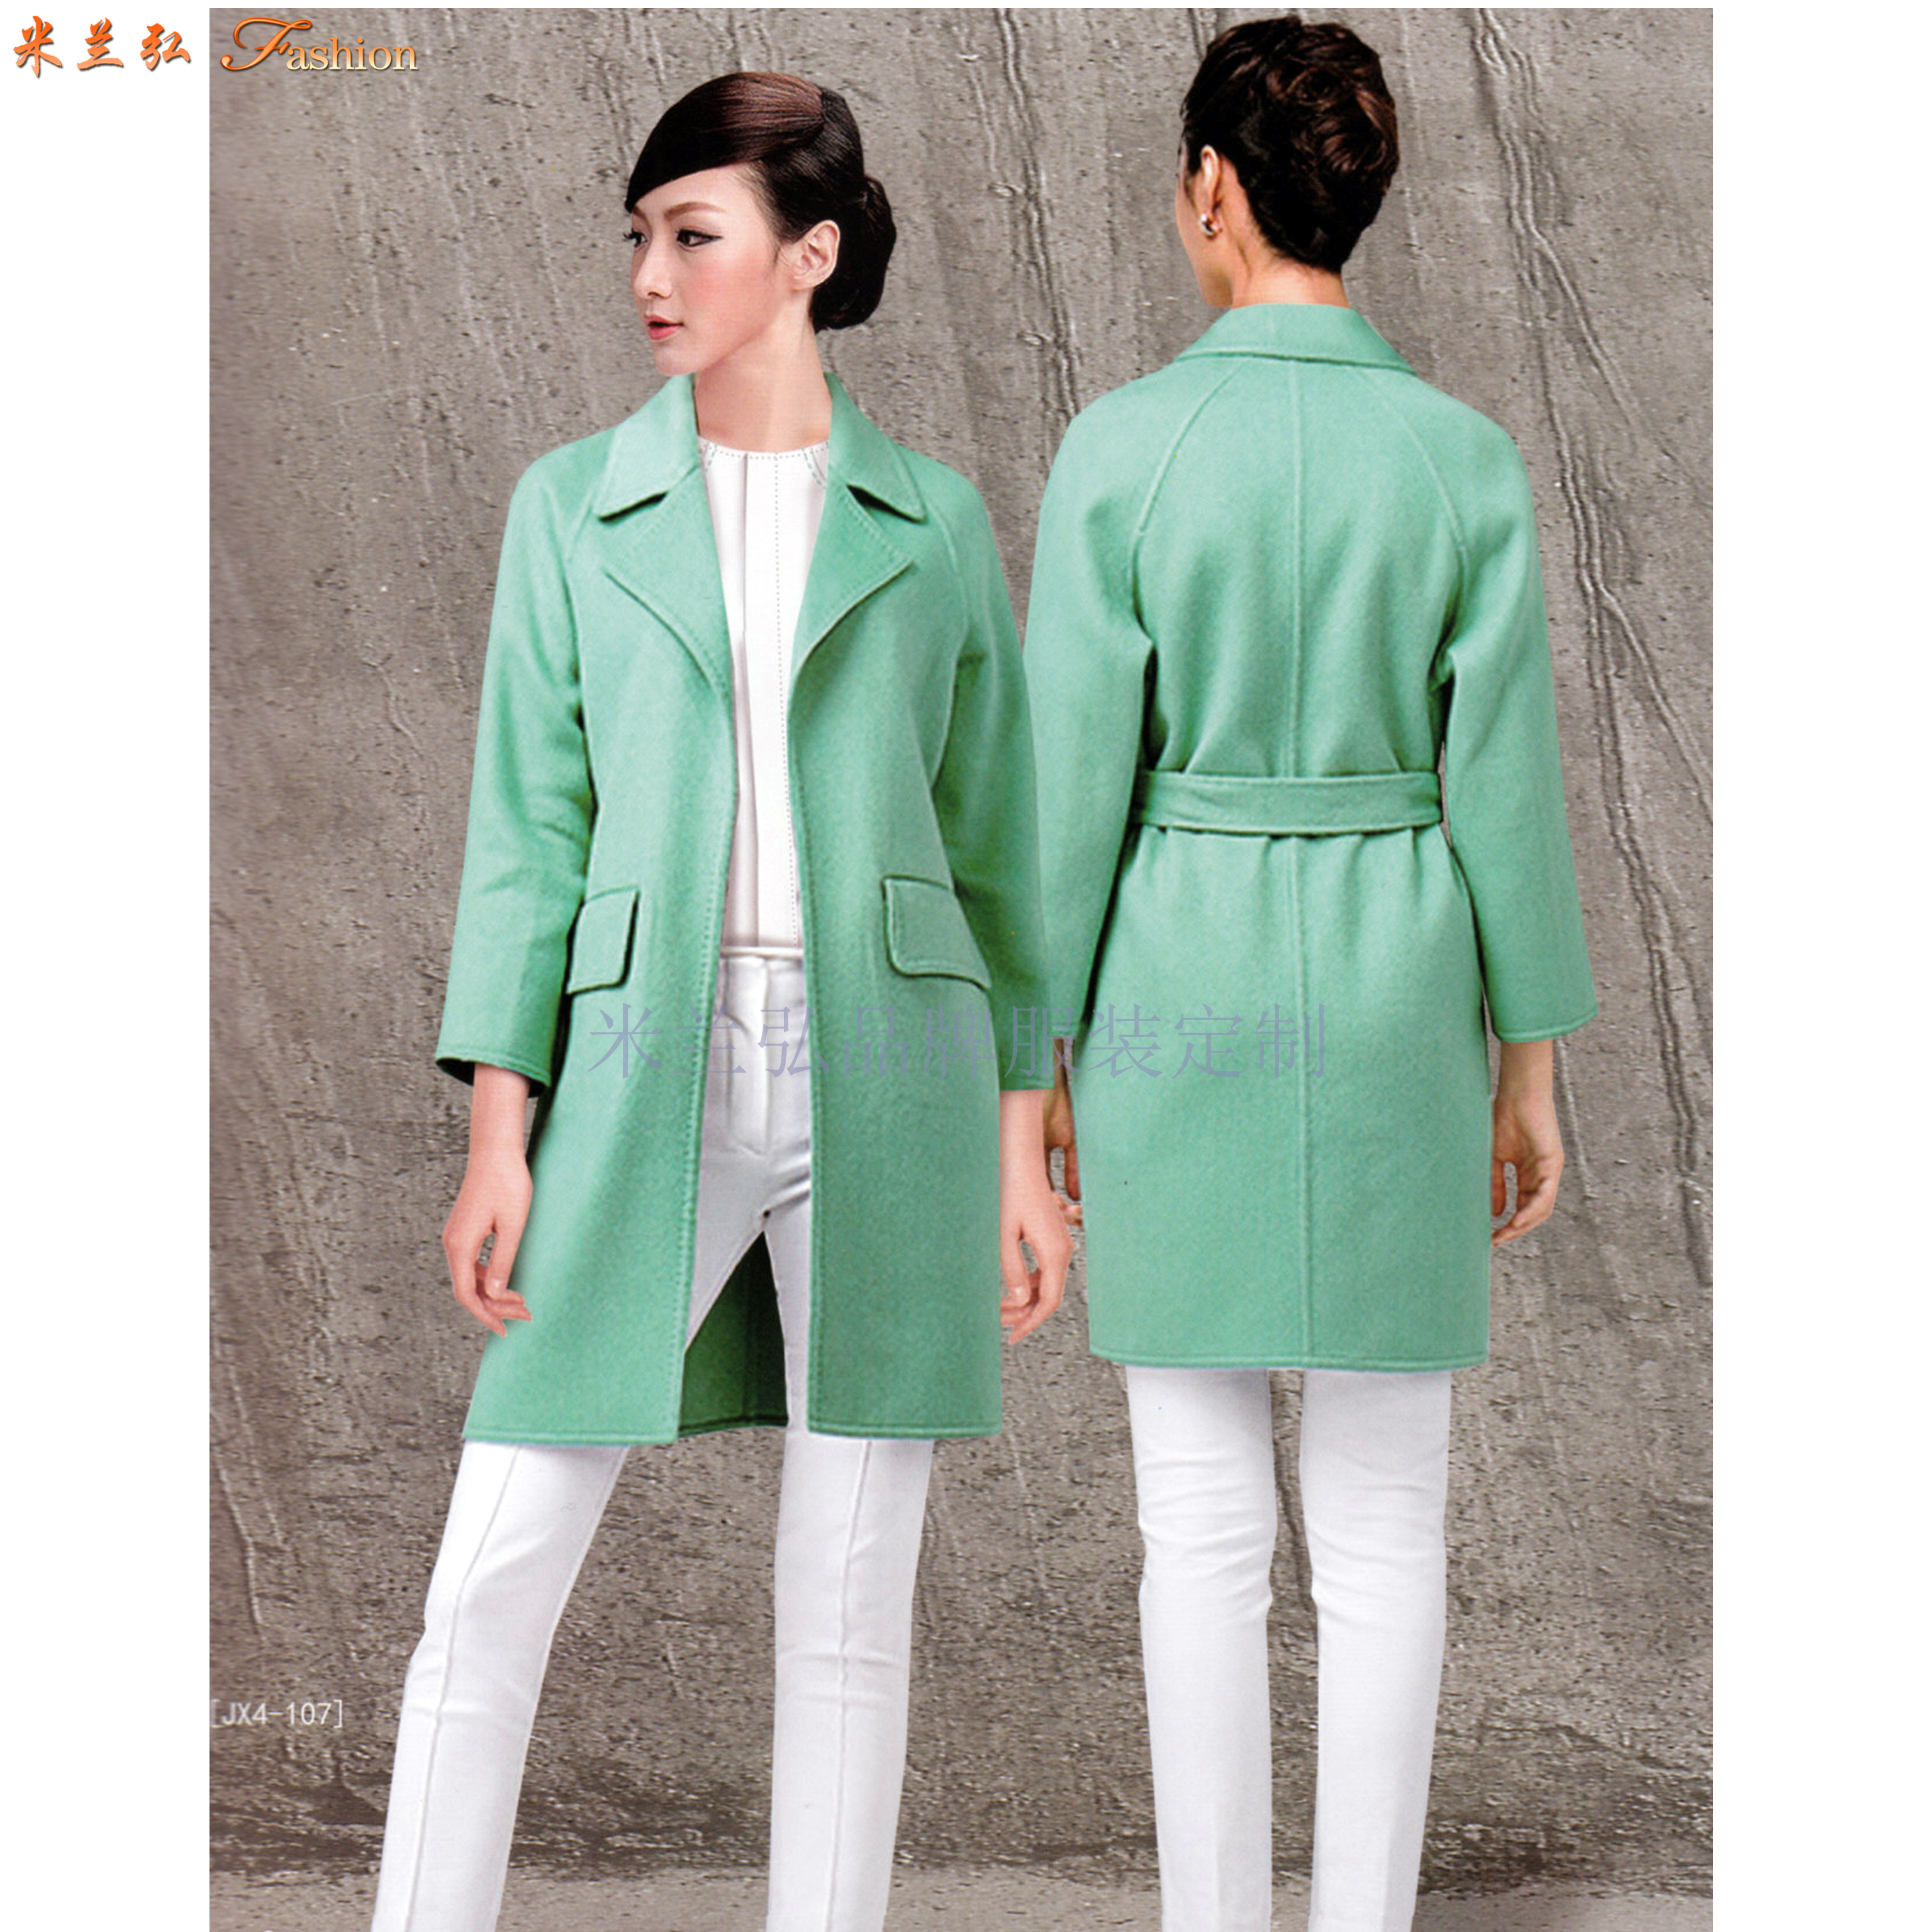 青岛正规大衣定制品牌-货真价实、式样时髦的呢子羊毛大衣厂家-4